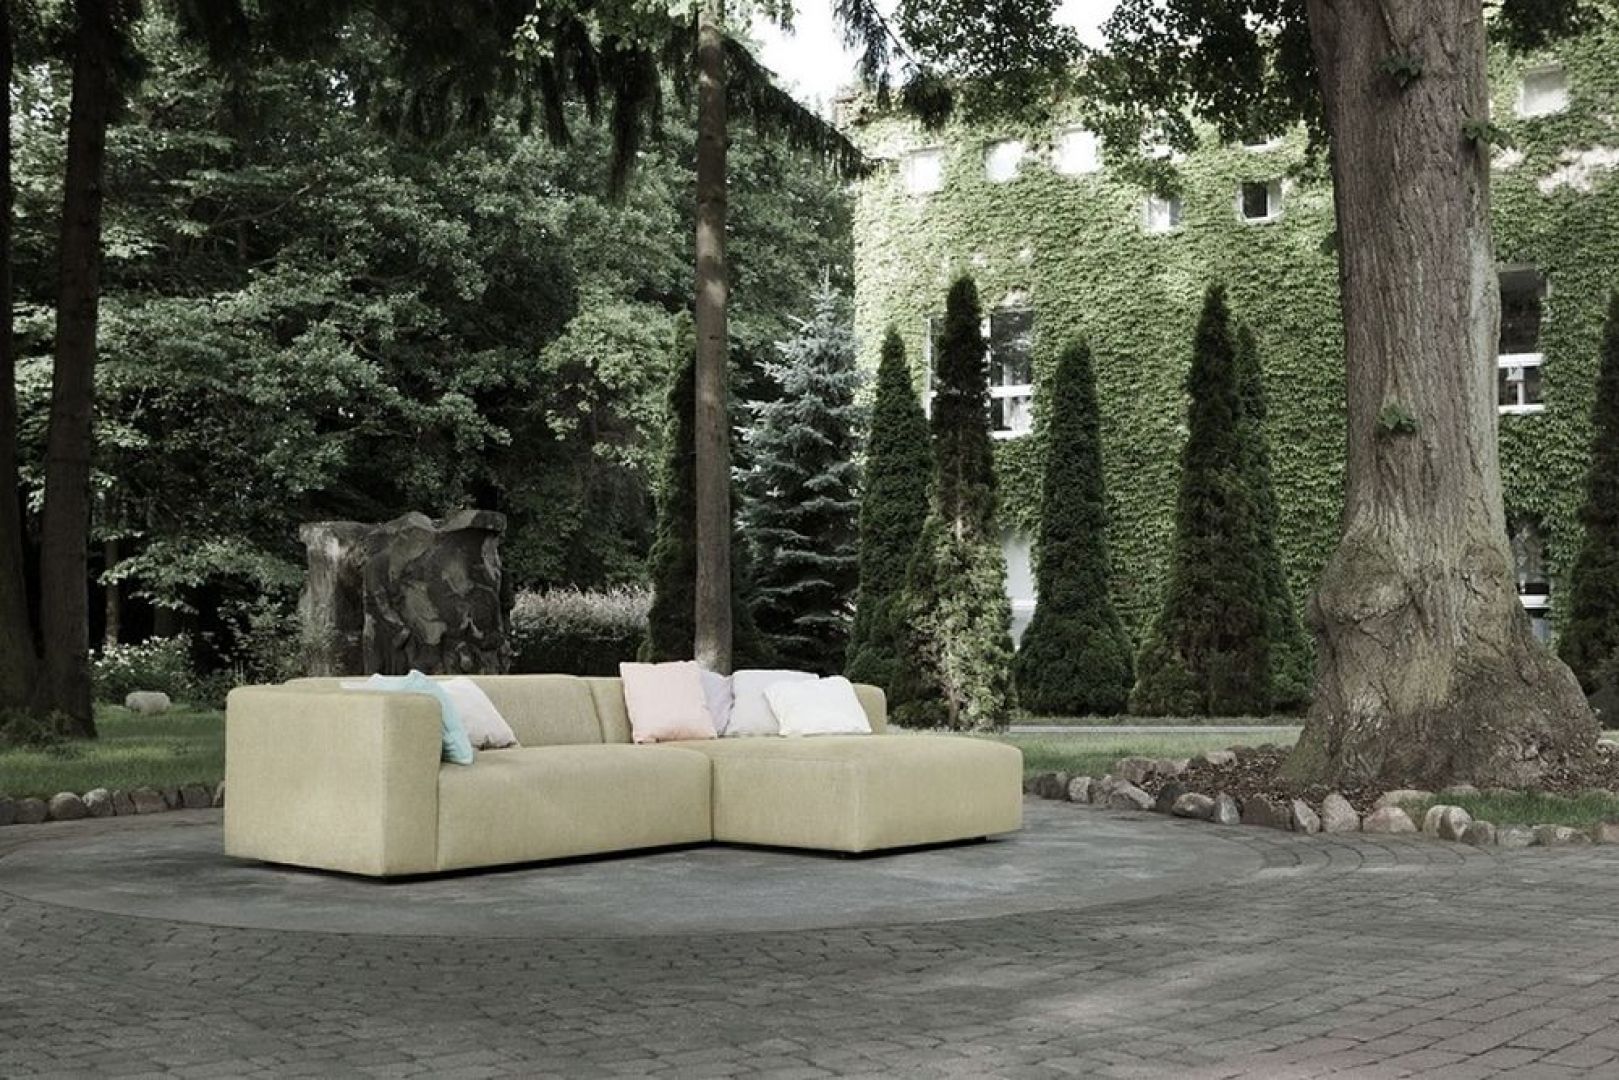 Sofa Milano pokryta naturalnym lnem jest przyjemna w dotyku. Fot. Sits